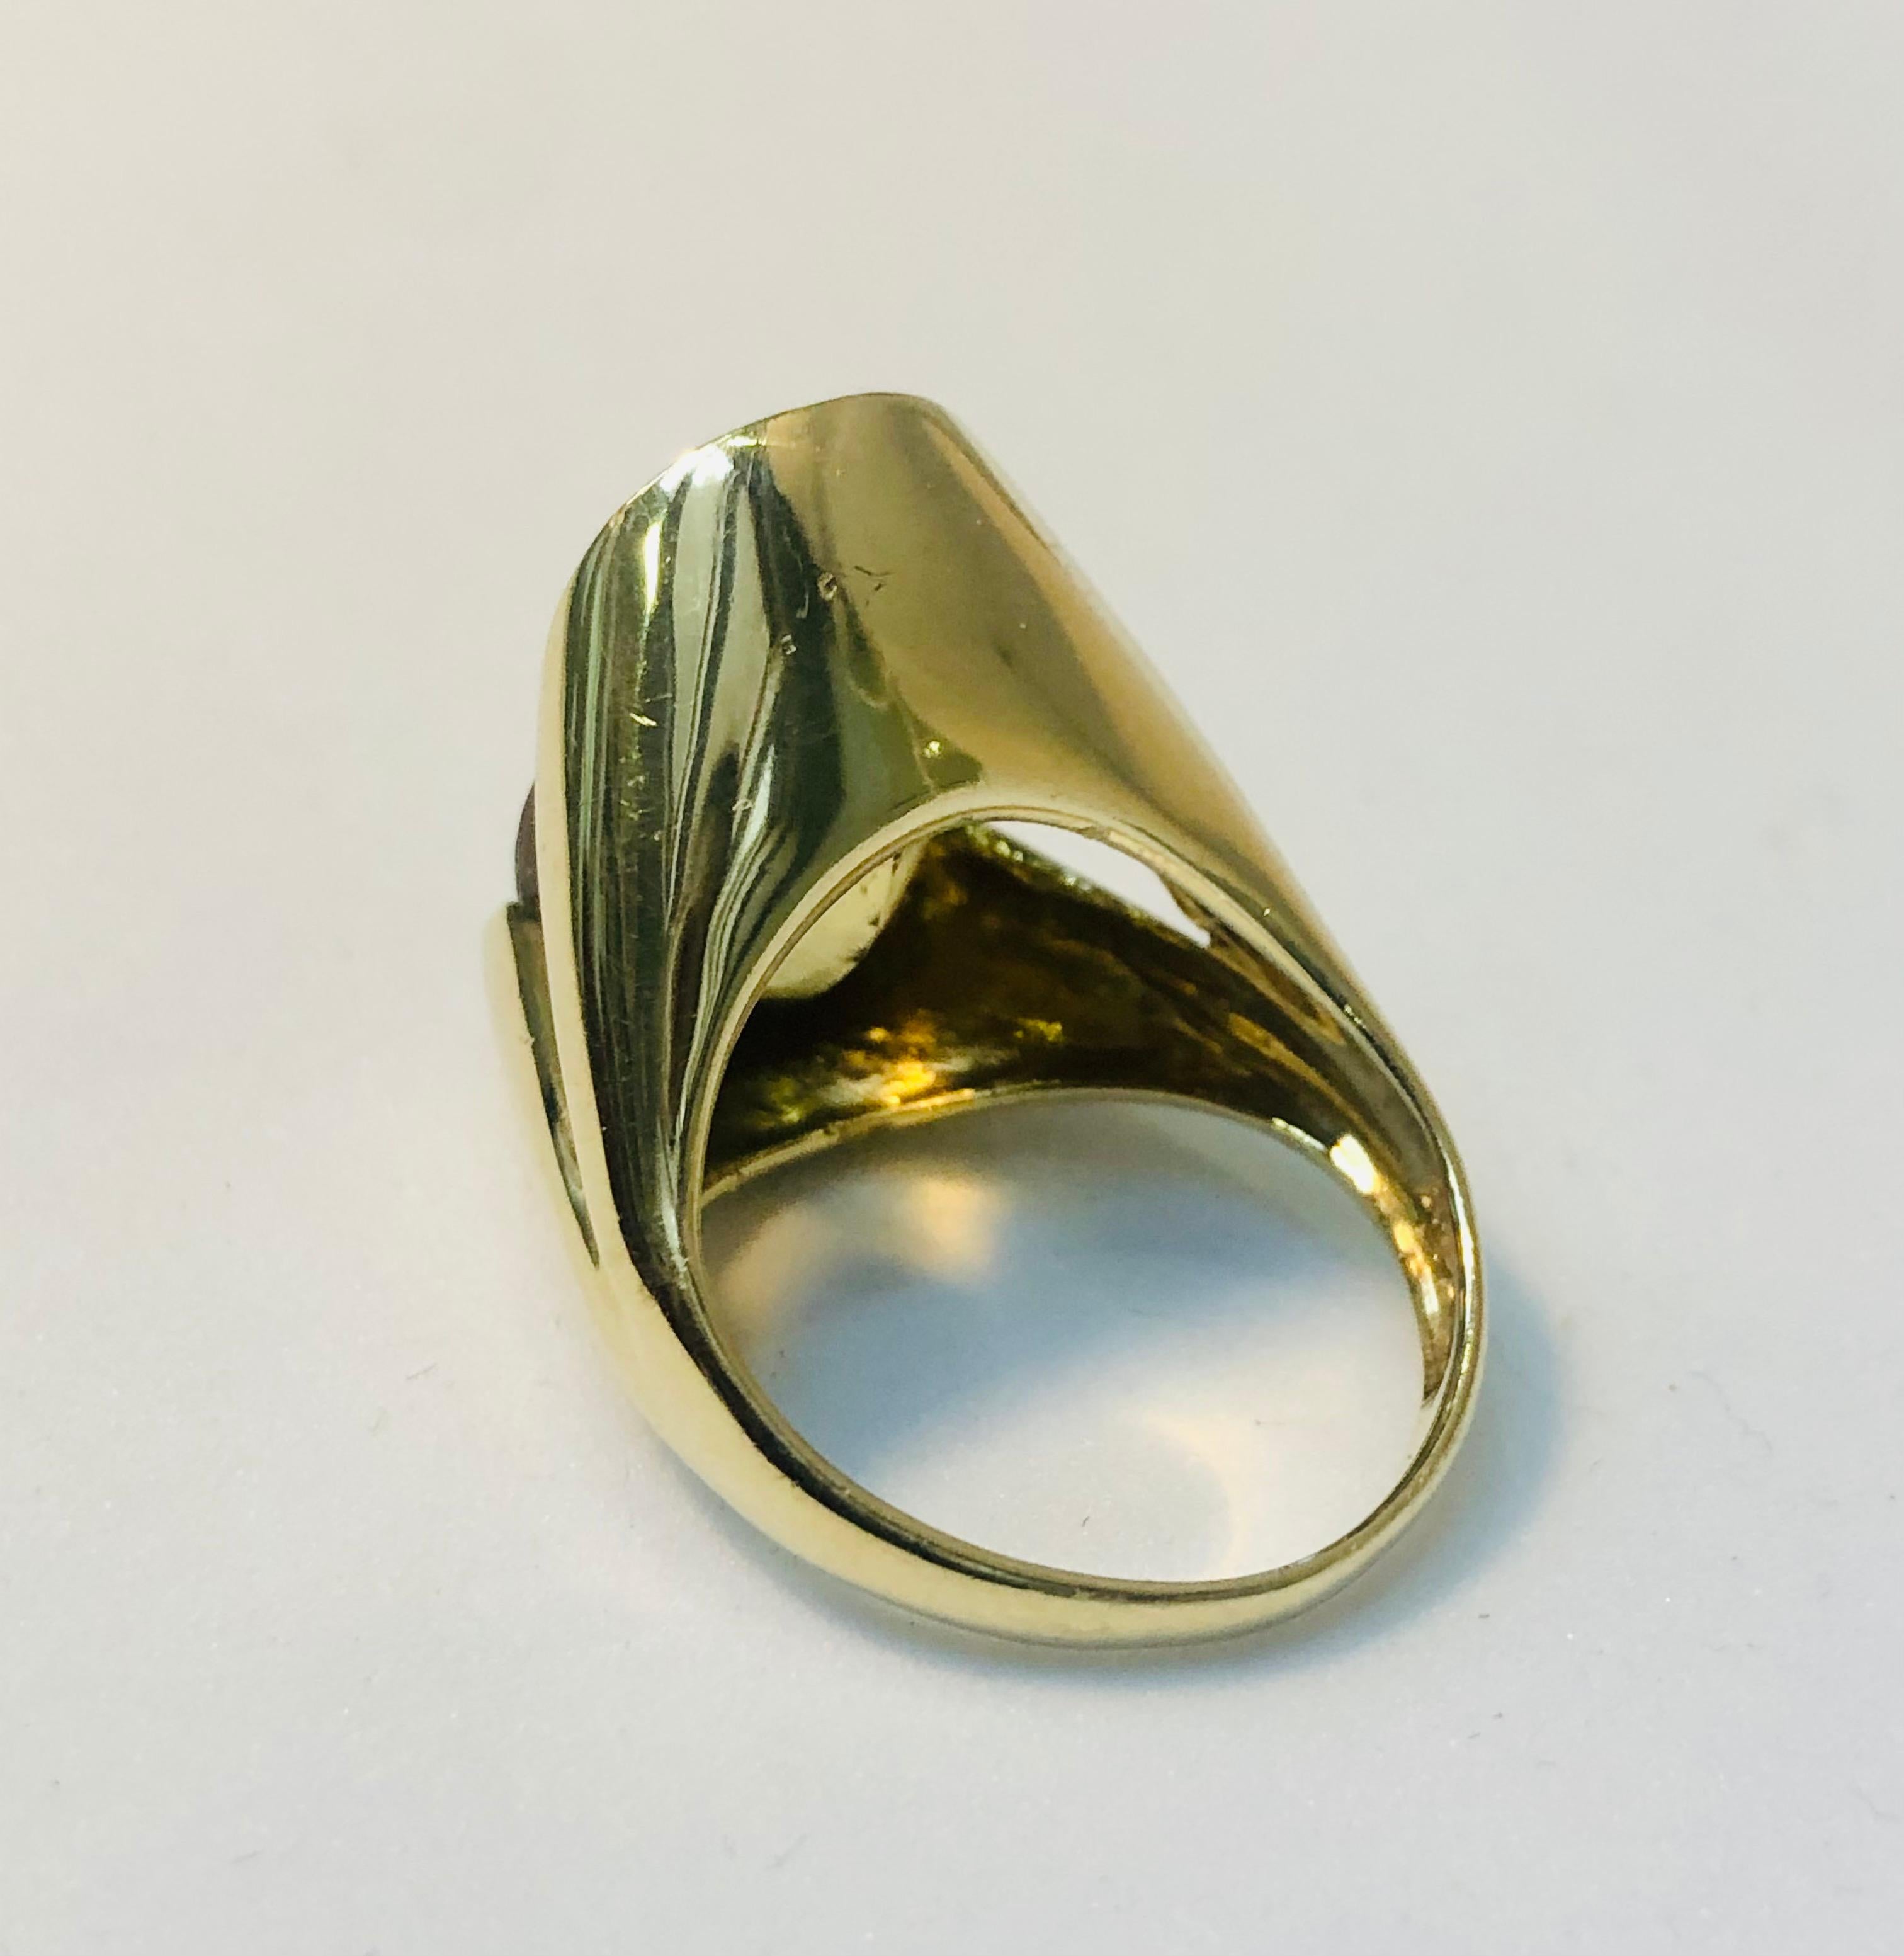 Large Oval Citrine Cocktail Ring, 9 Karat Gold (Zeitgenössisch)